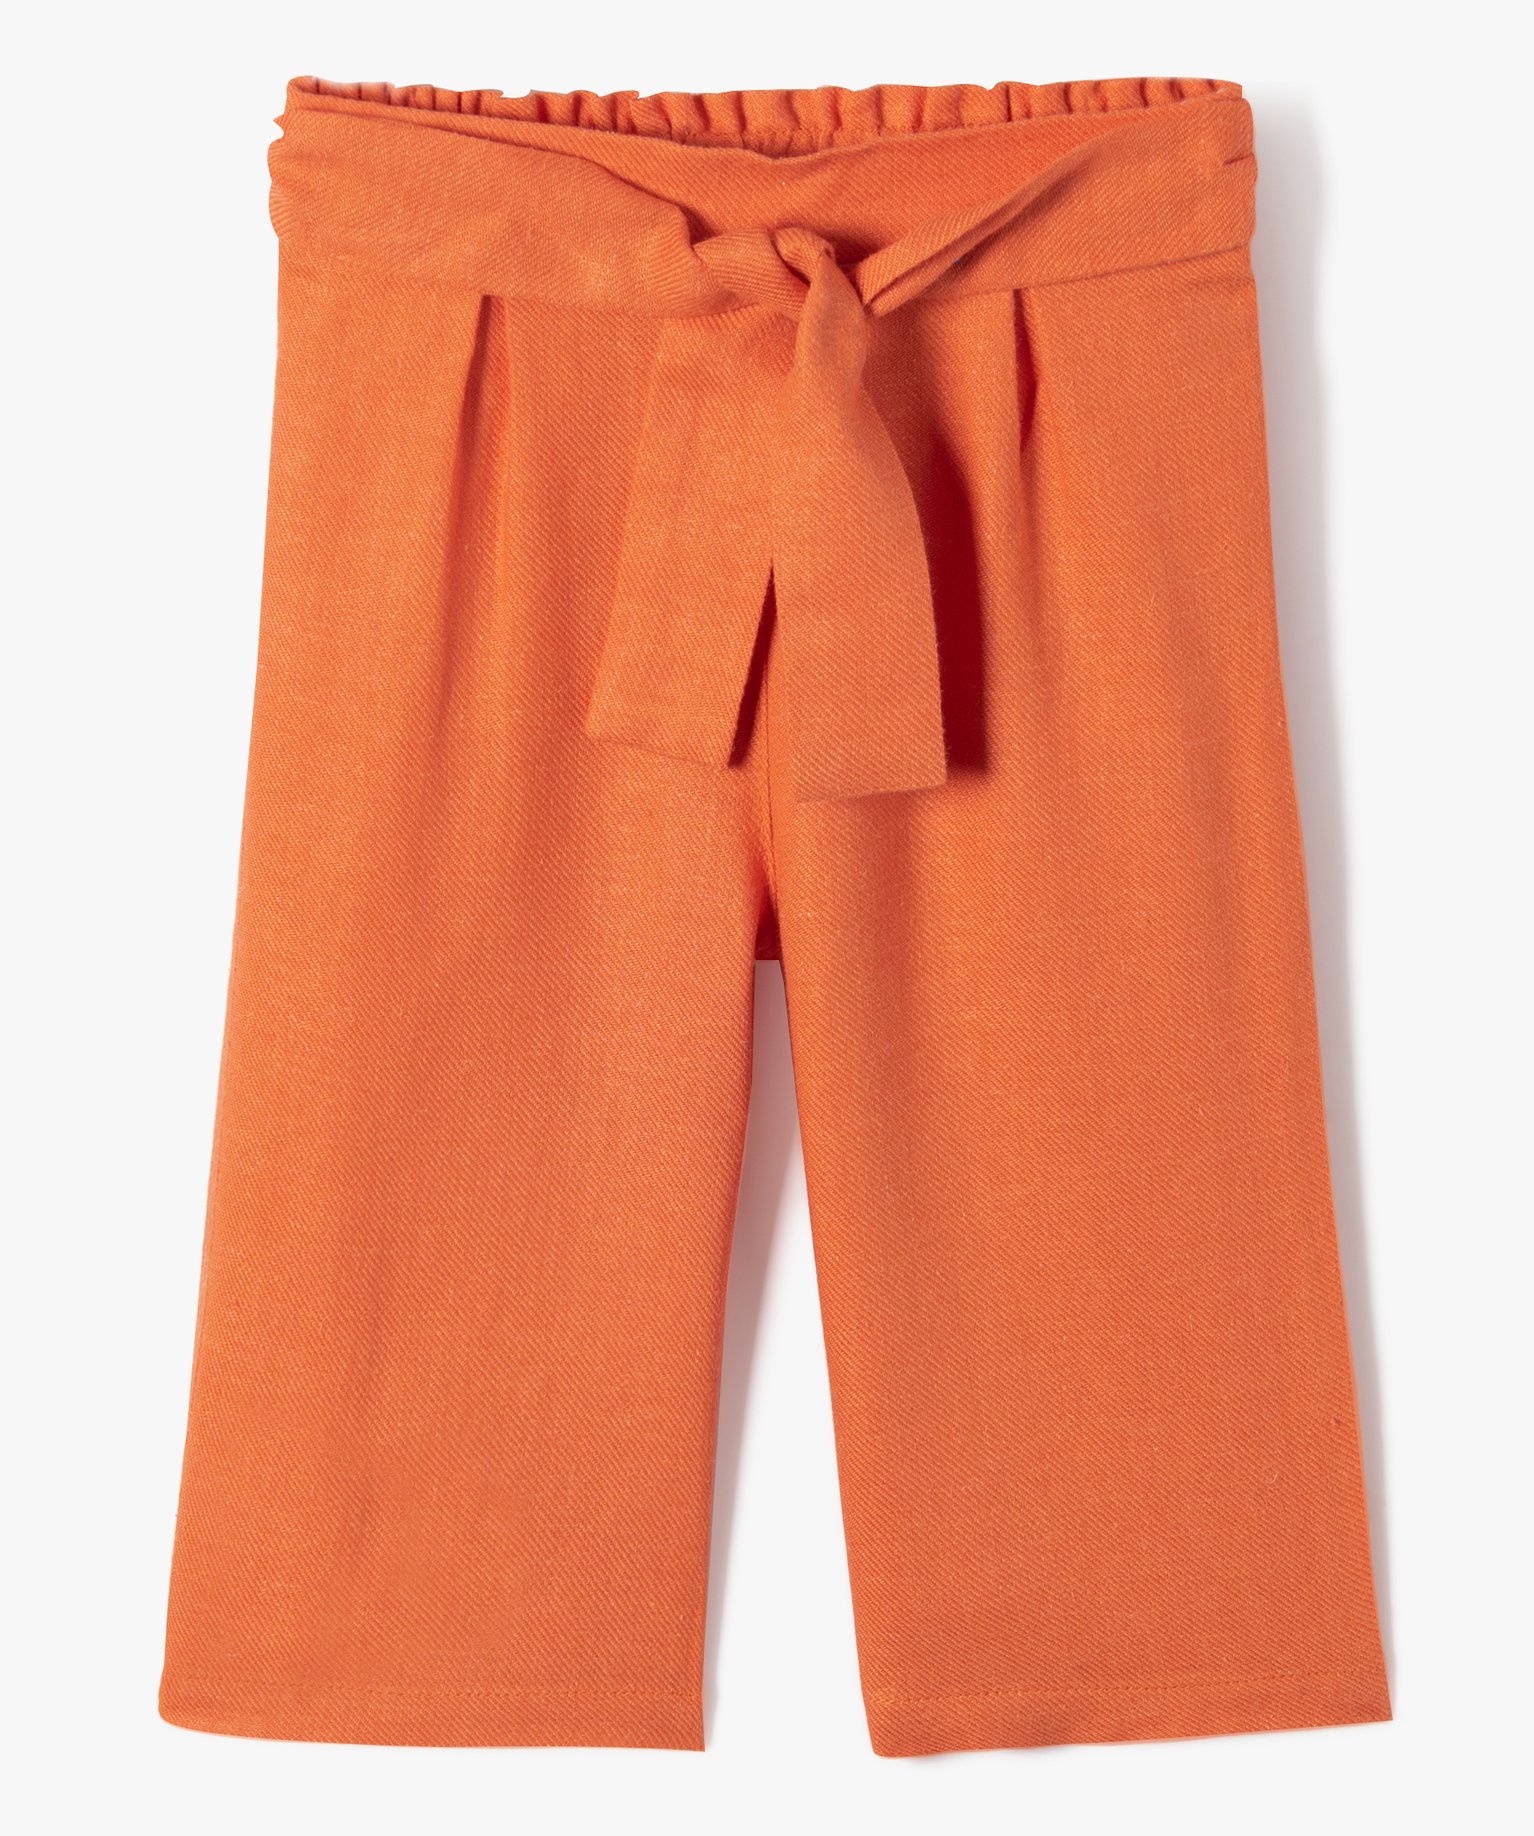 Pantalon bébé fille large en lin et viscose - 4 - orange - GEMO